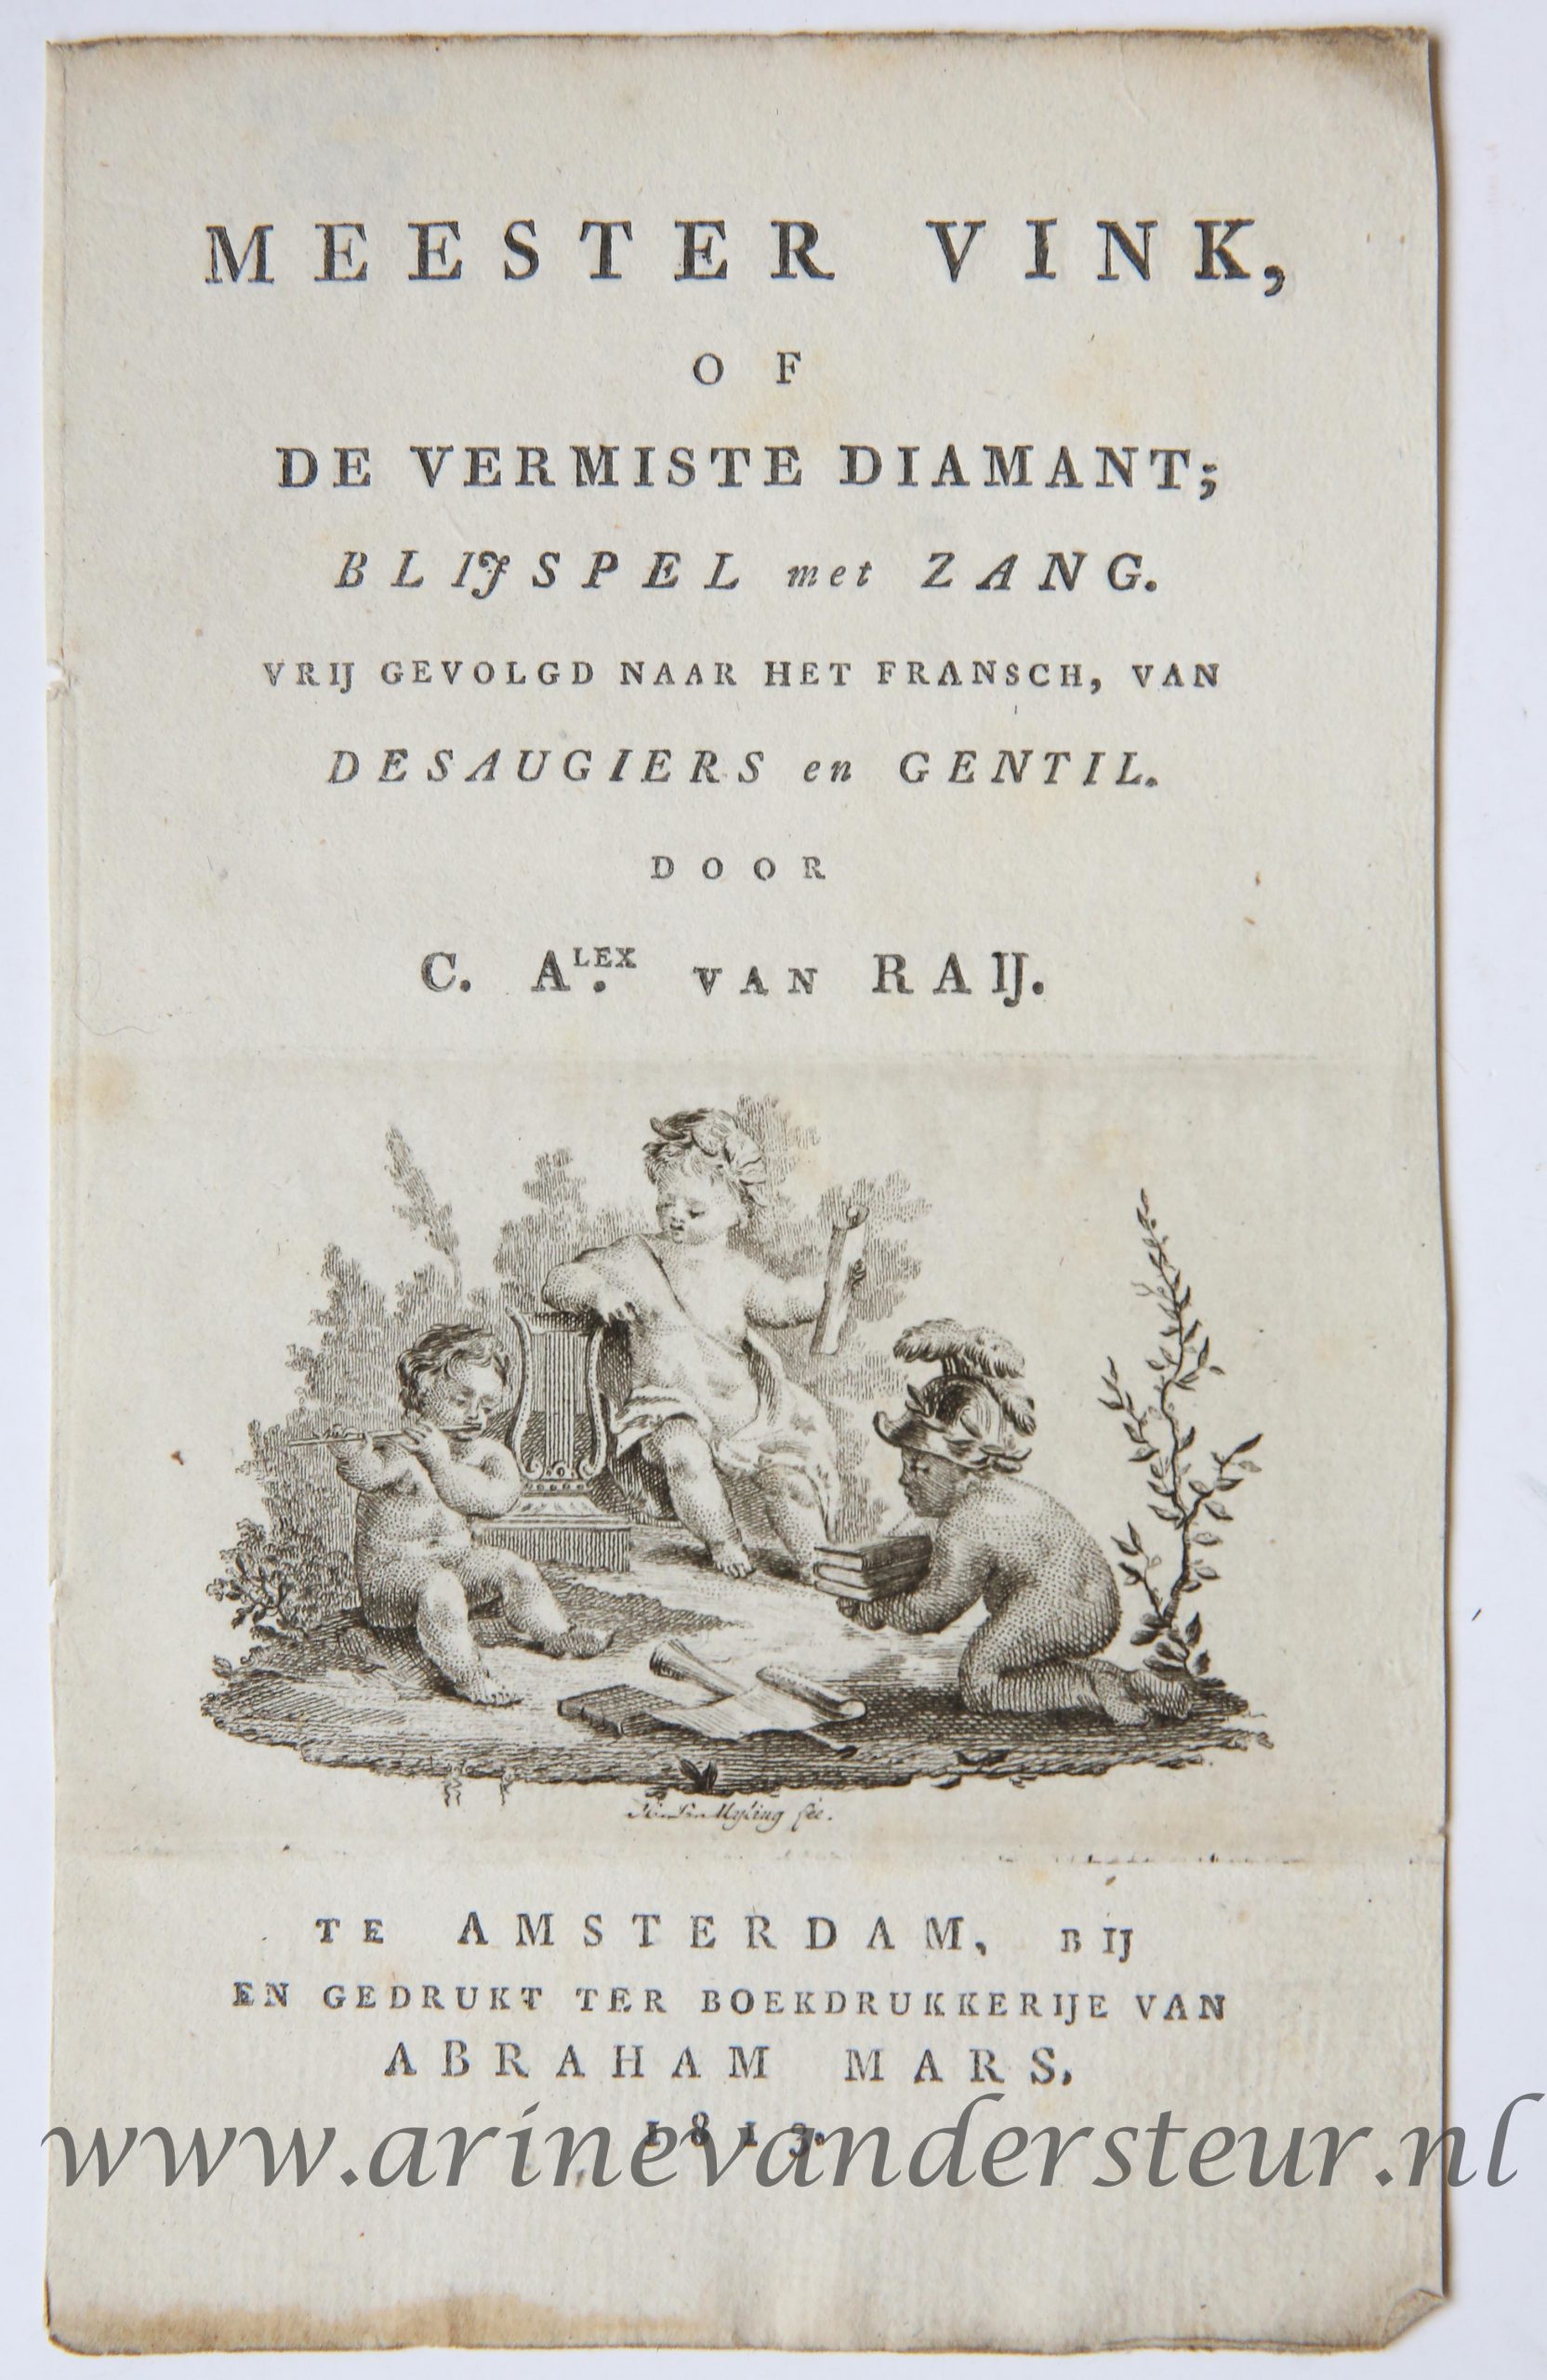 [Antique title page, 1813] Meester Vink of de Vermiste diamant; blijspel met zang, published 1813, 1 p.